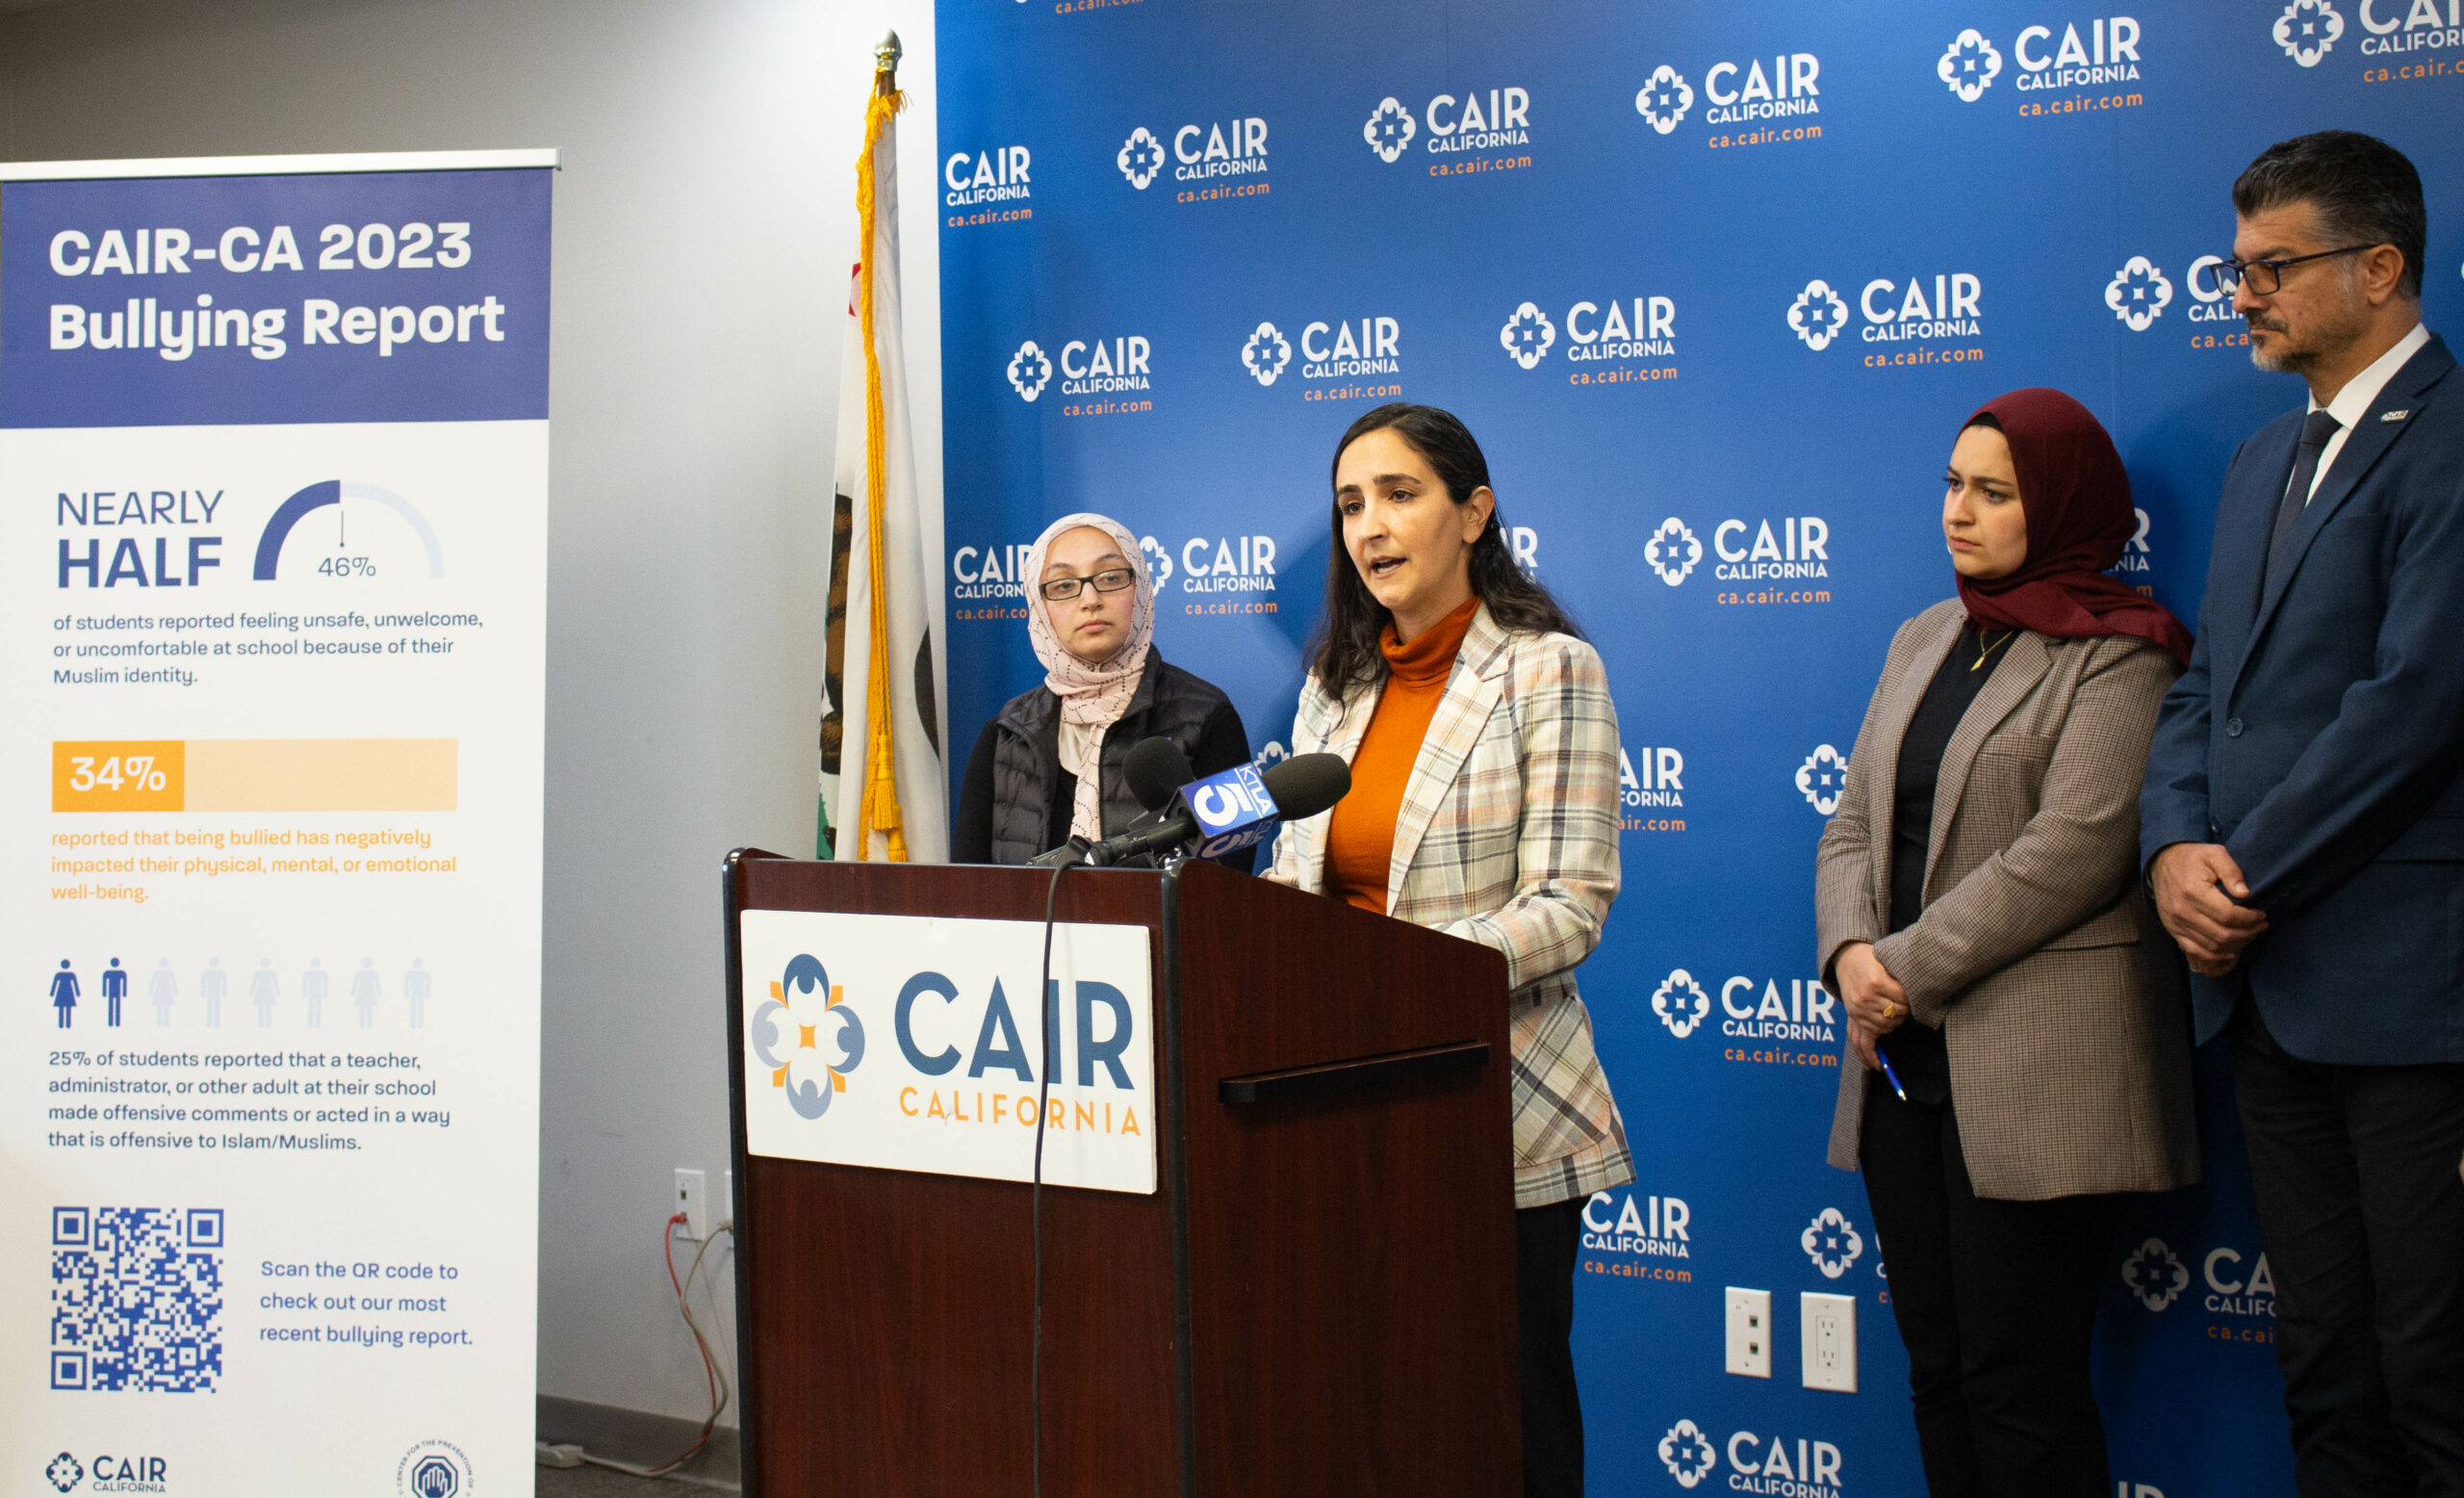 Hebah Farrag speaks at CAIR-CA 2023 Bullying Report Press Conference